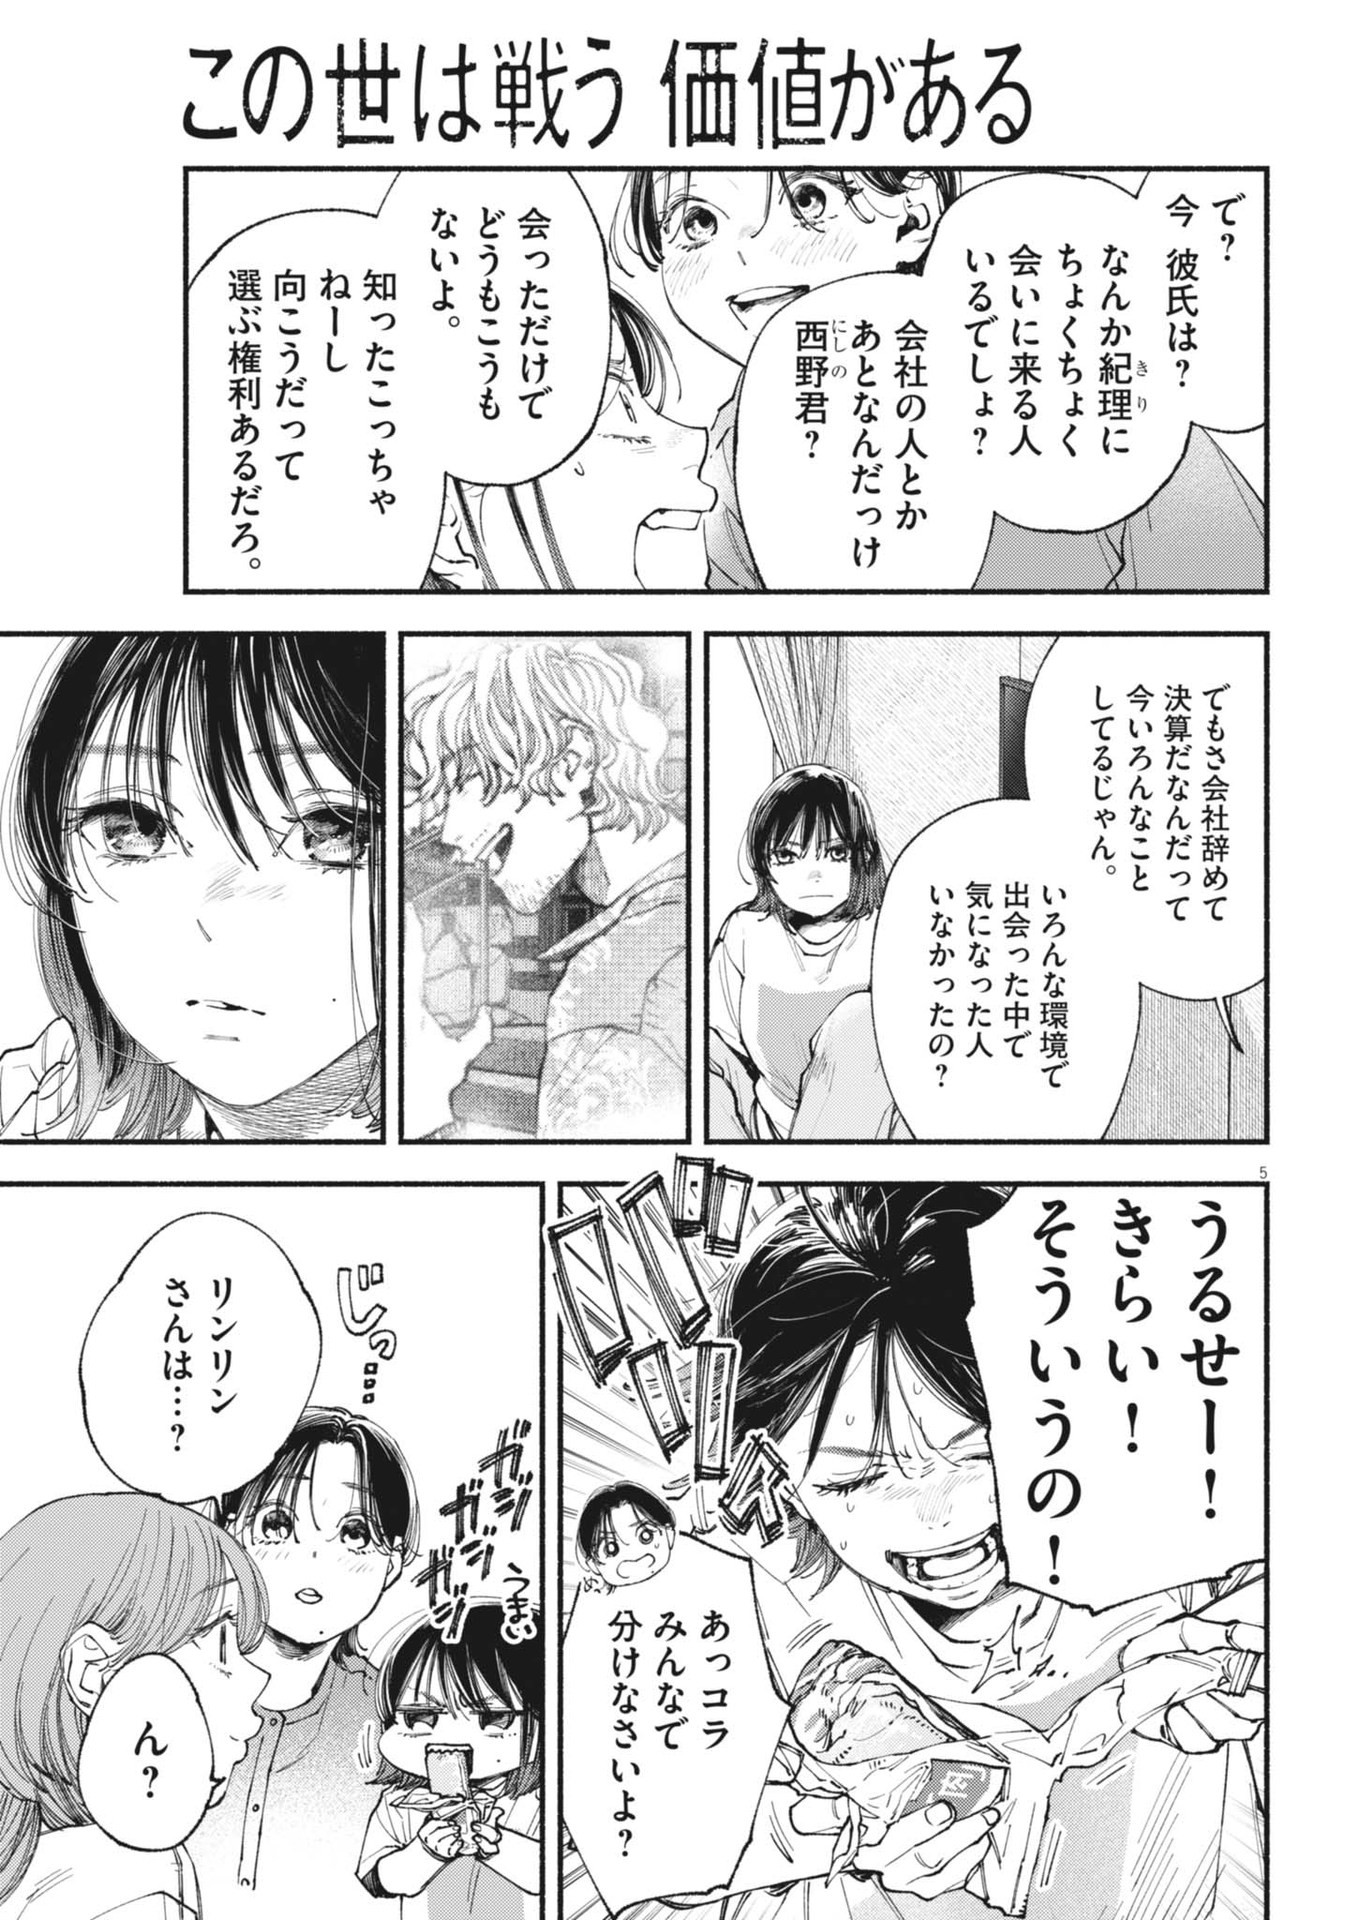 Konoyo wa Tatakau Kachi ga Aru  - Chapter 26 - Page 5